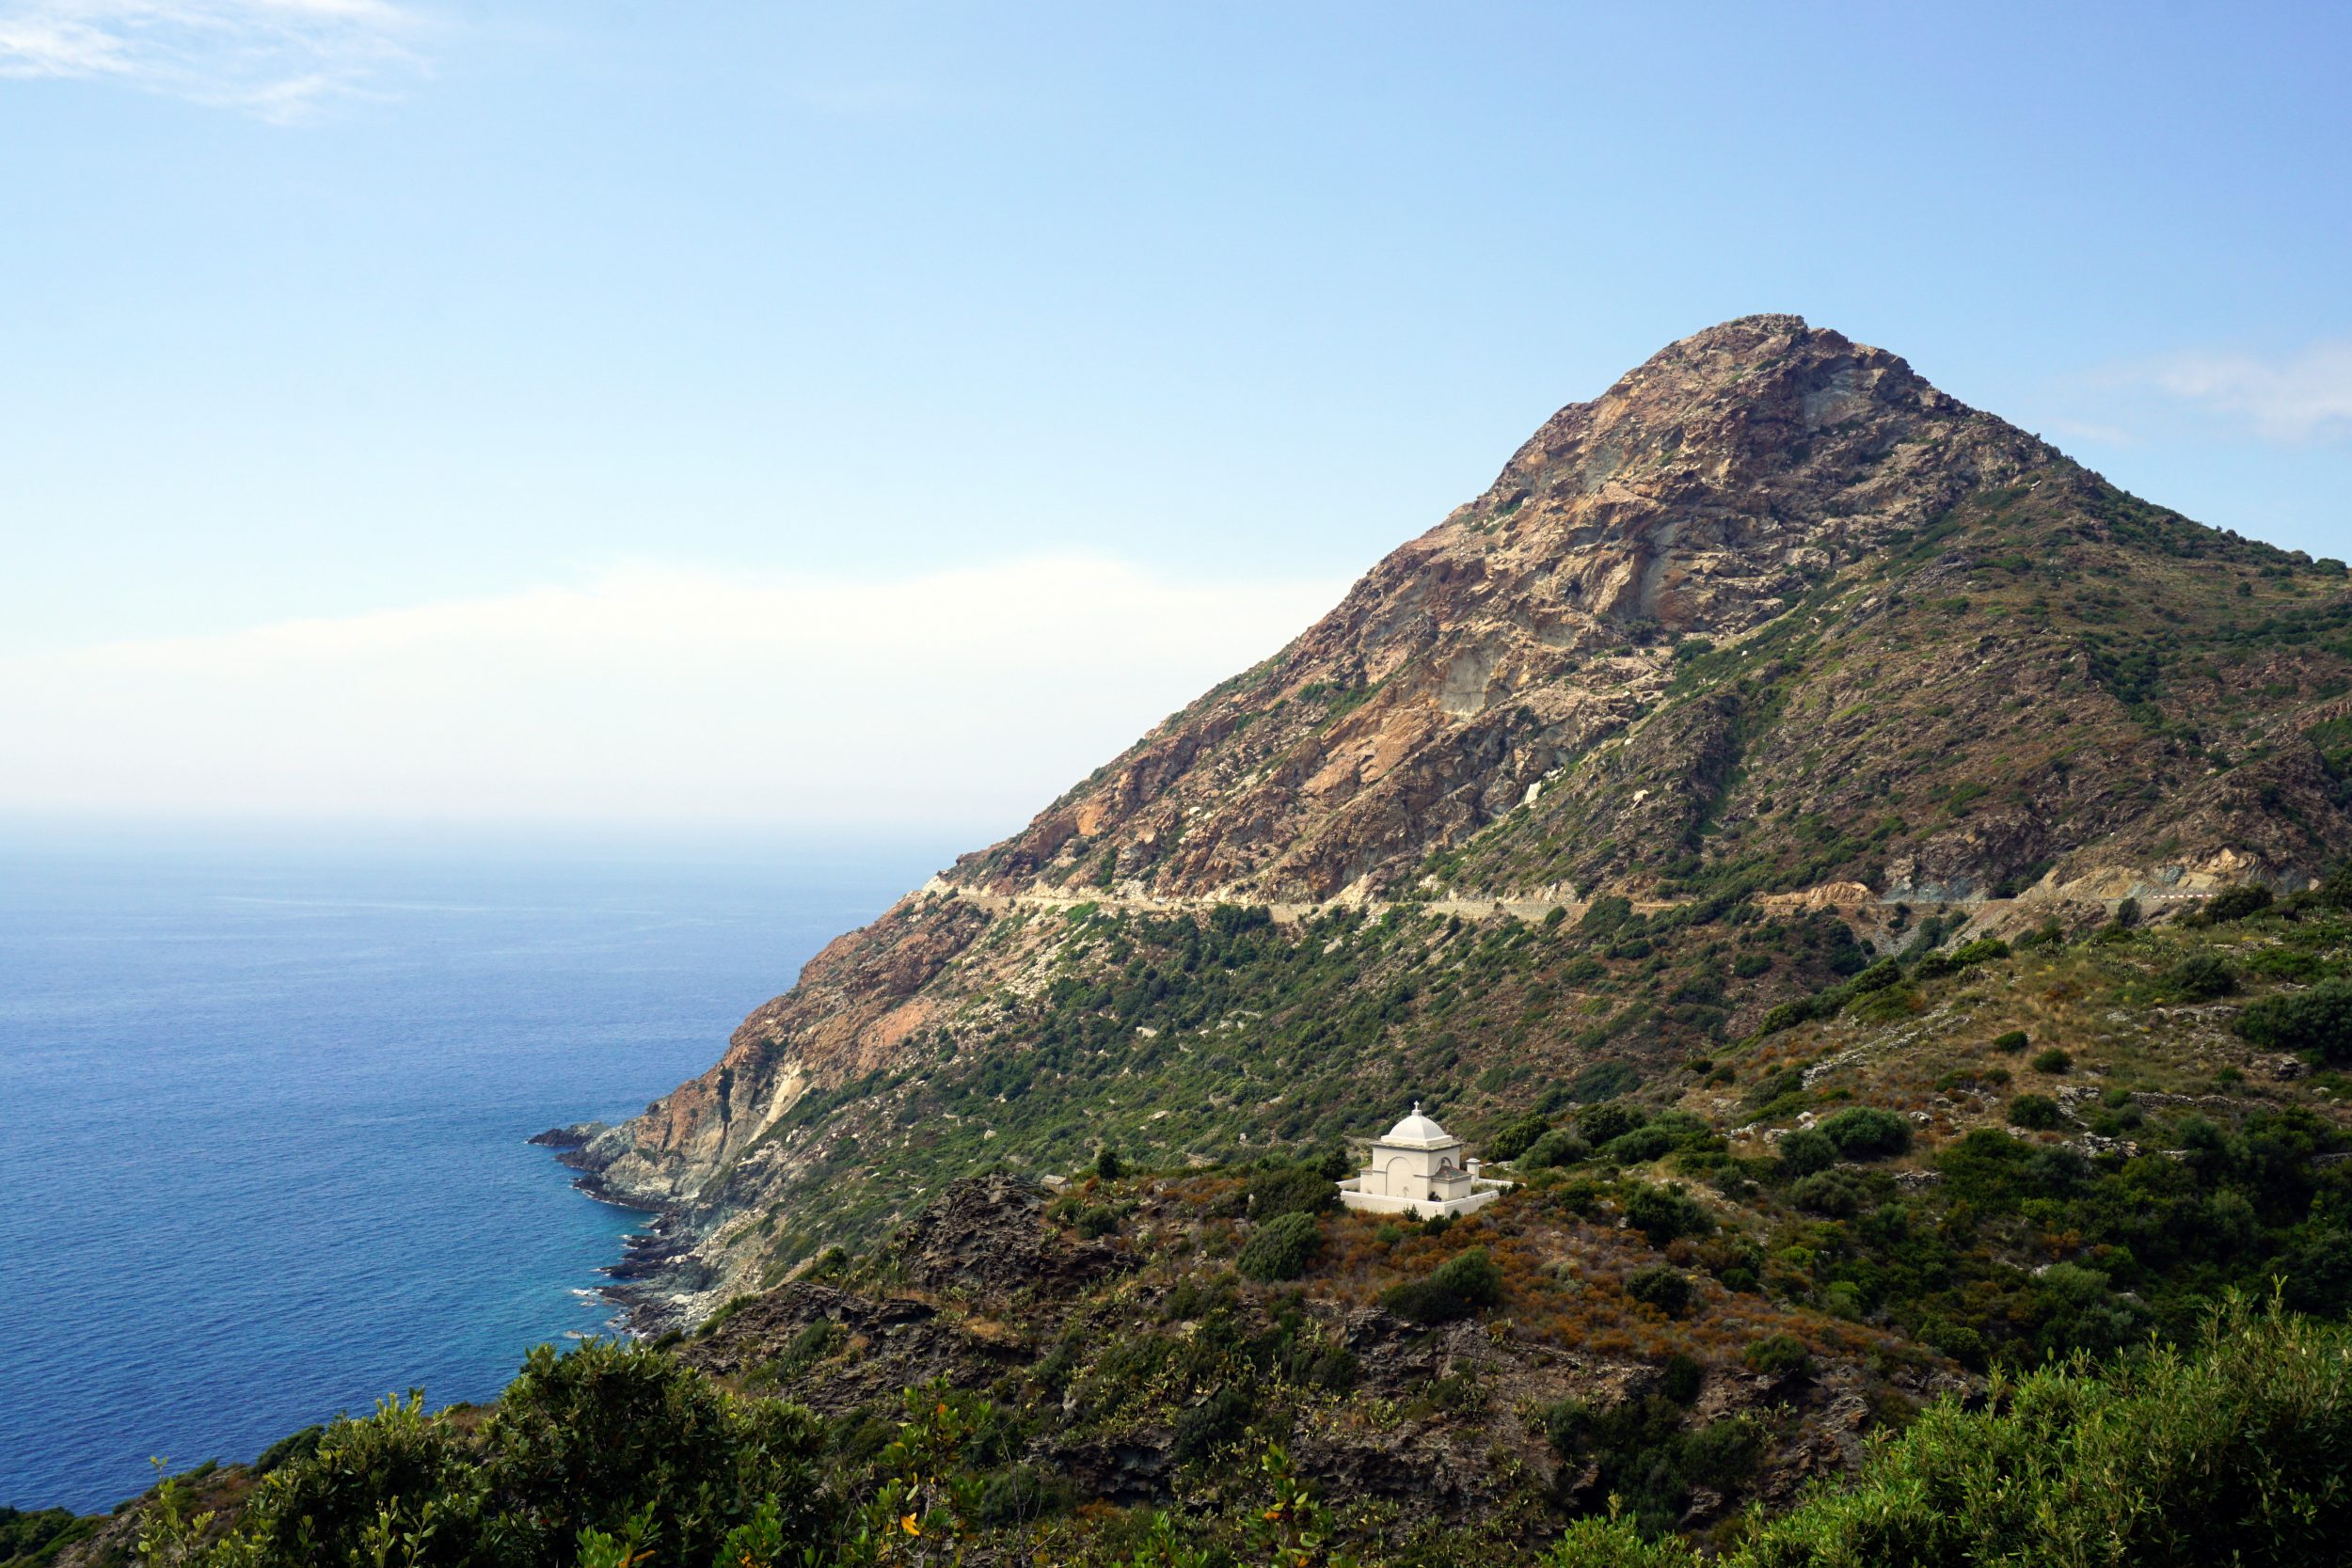 Tomba Cape Corse